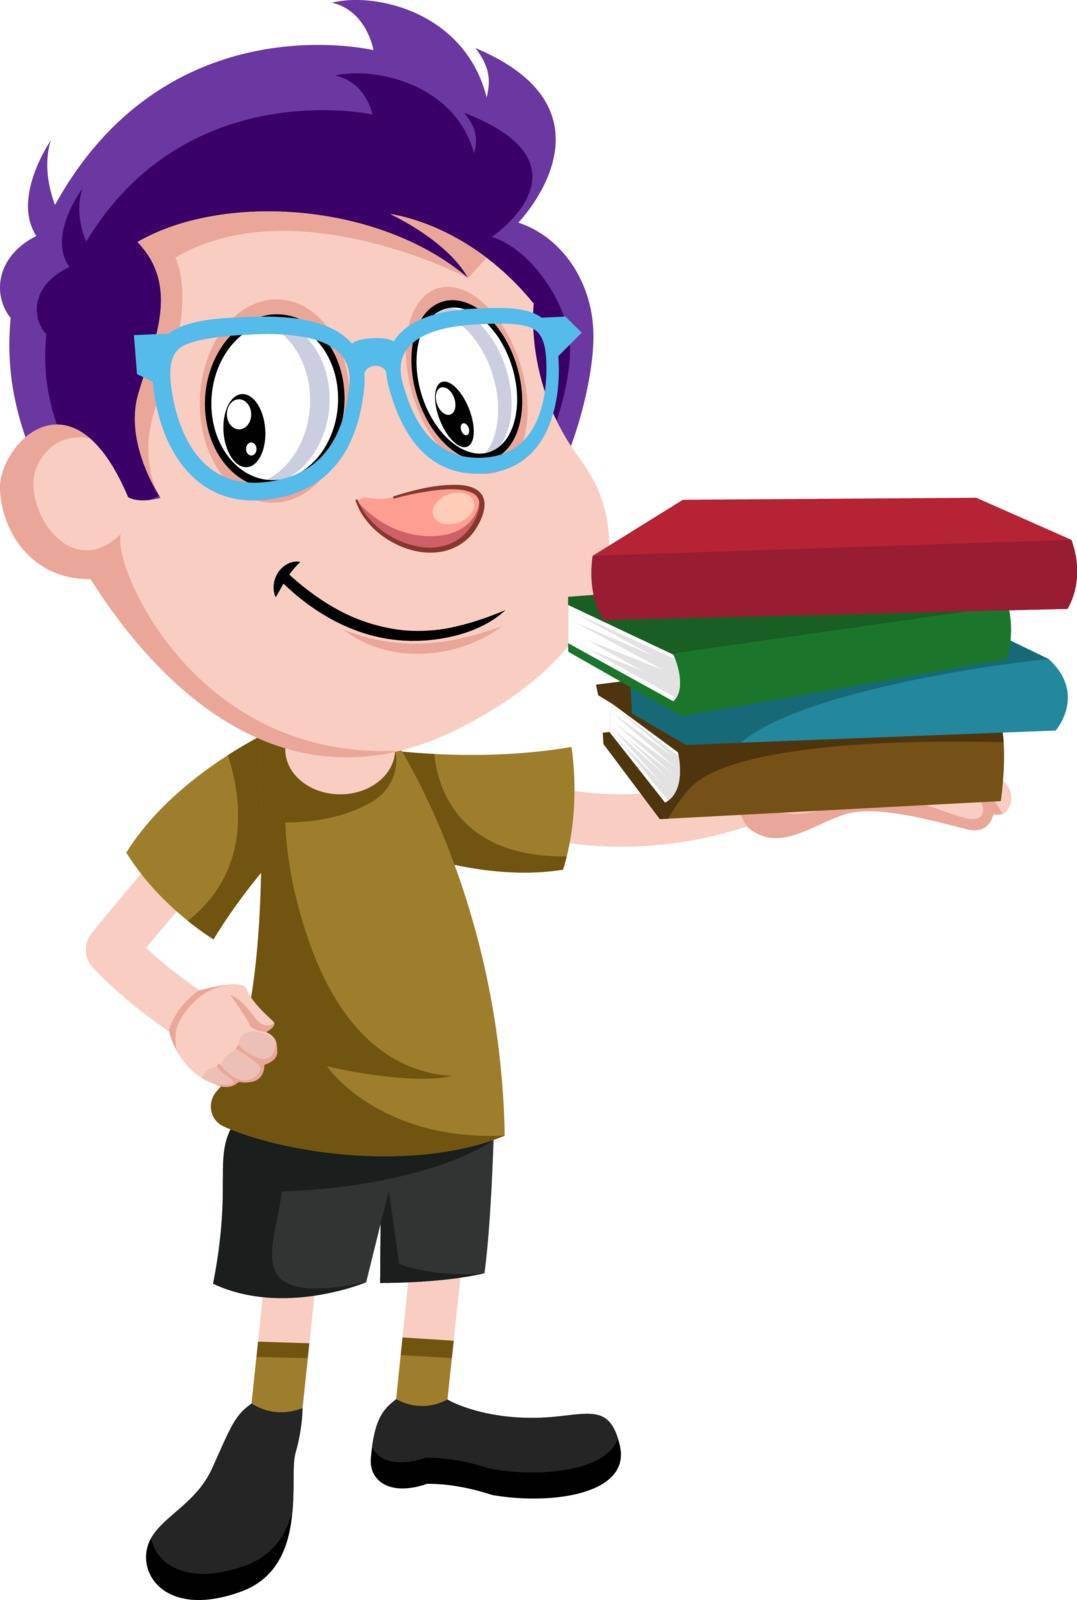 Boy holding books, illustration, vector on white background. by Morphart